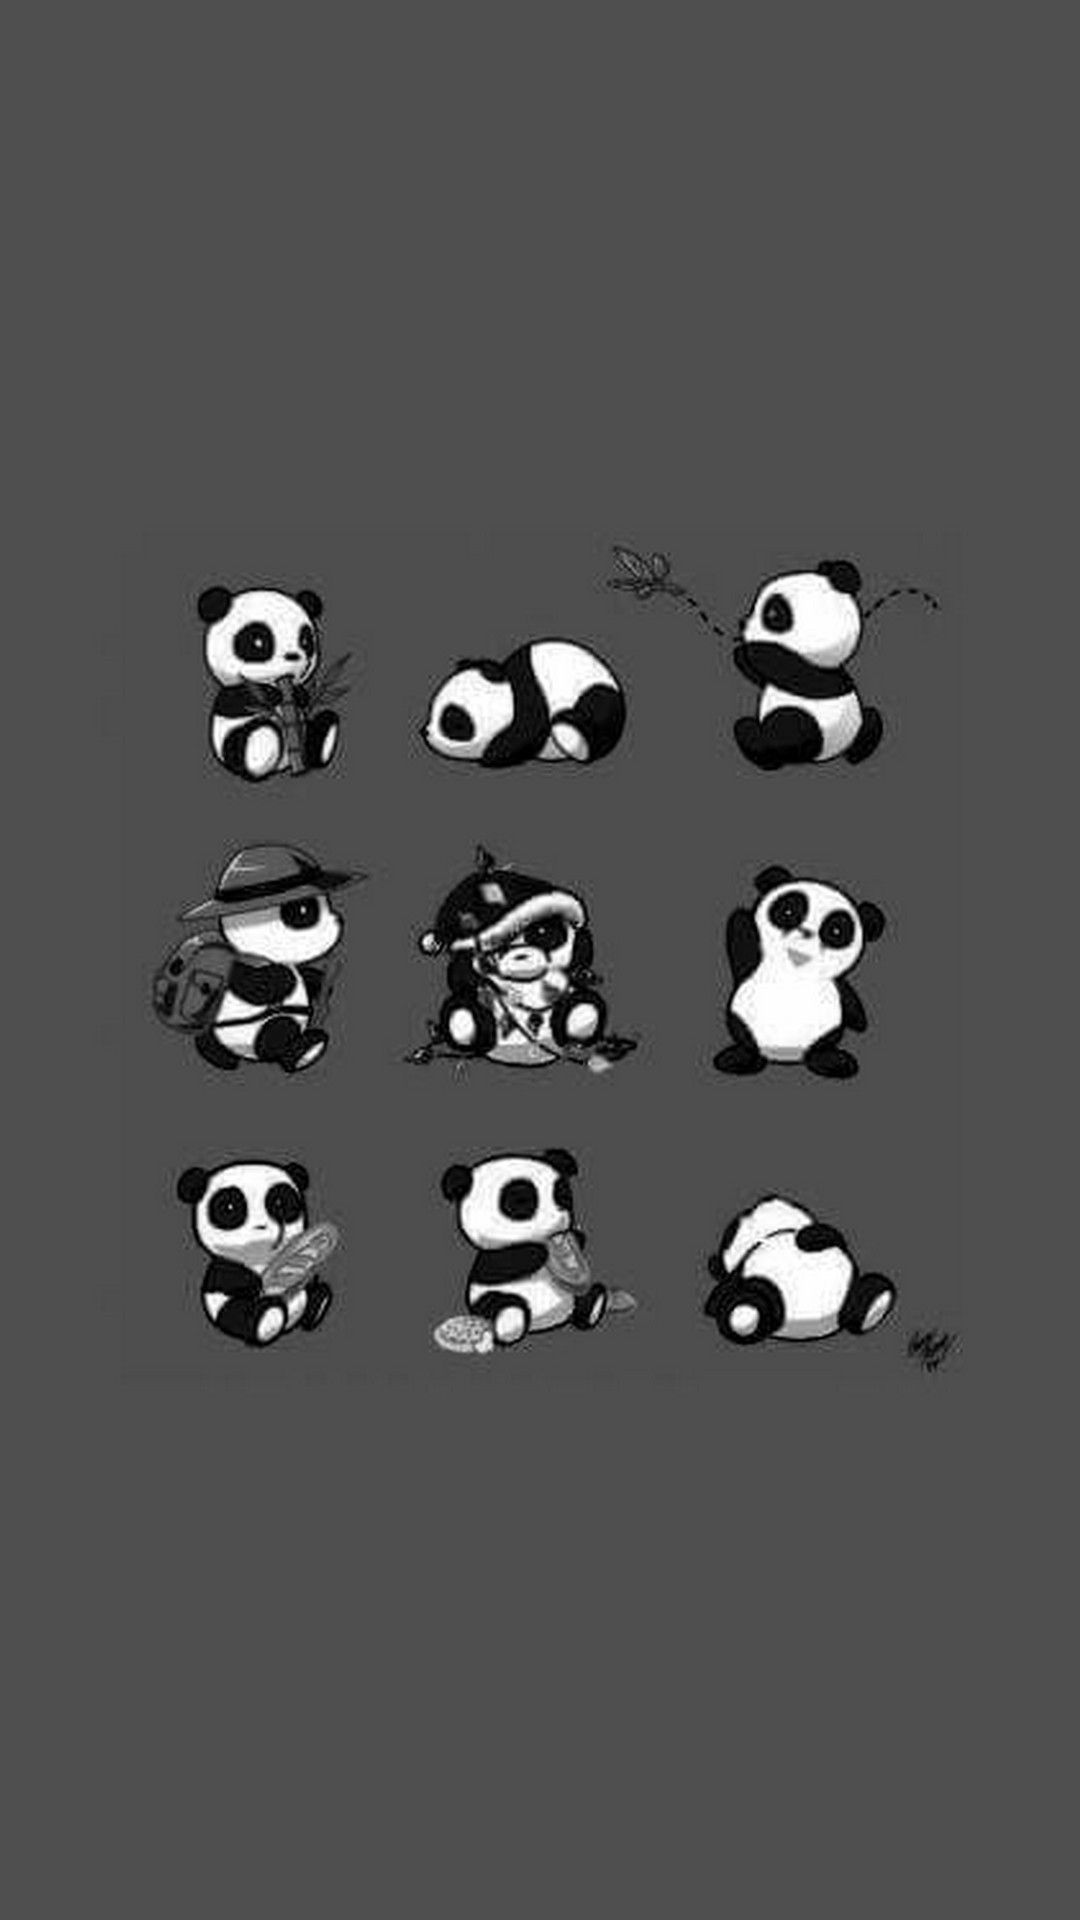 Cute Baby Panda Wallpaper Wallpapers